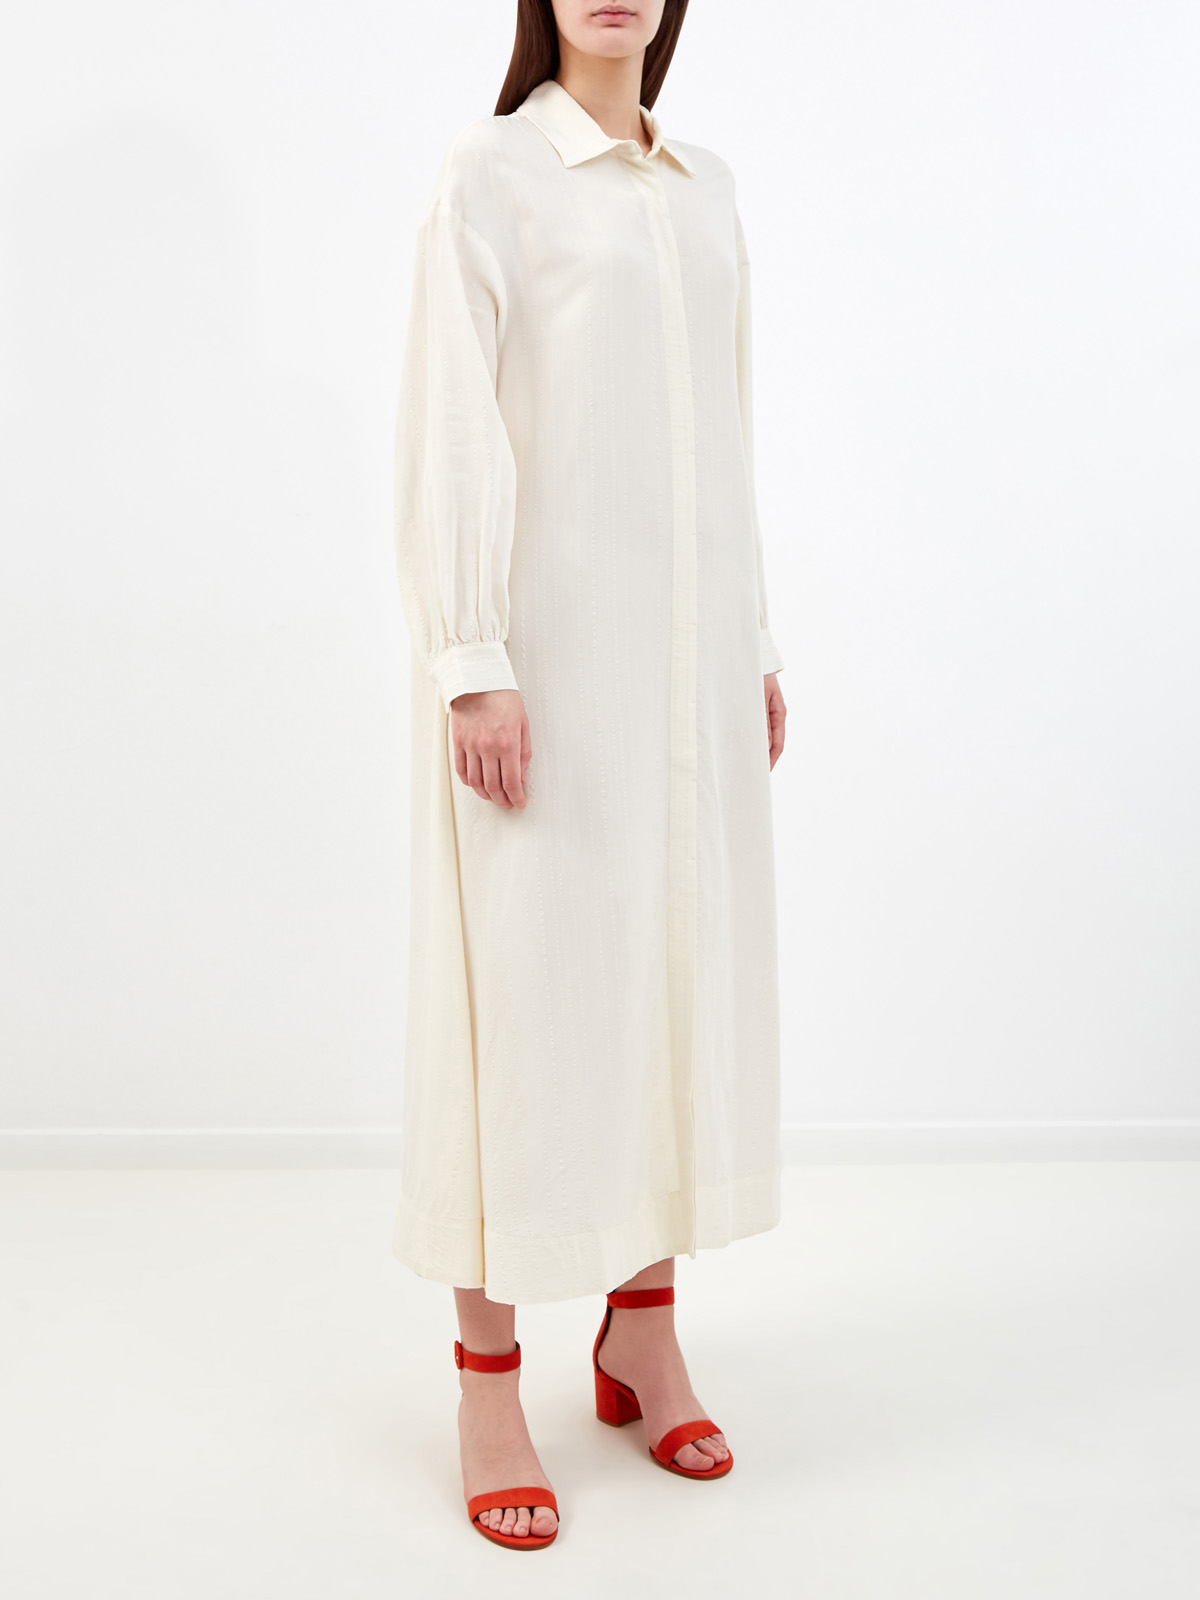 Кремовое платье-рубашка с отложным воротником и прострочкой RE VERA, цвет белый, размер M;XL;S - фото 3